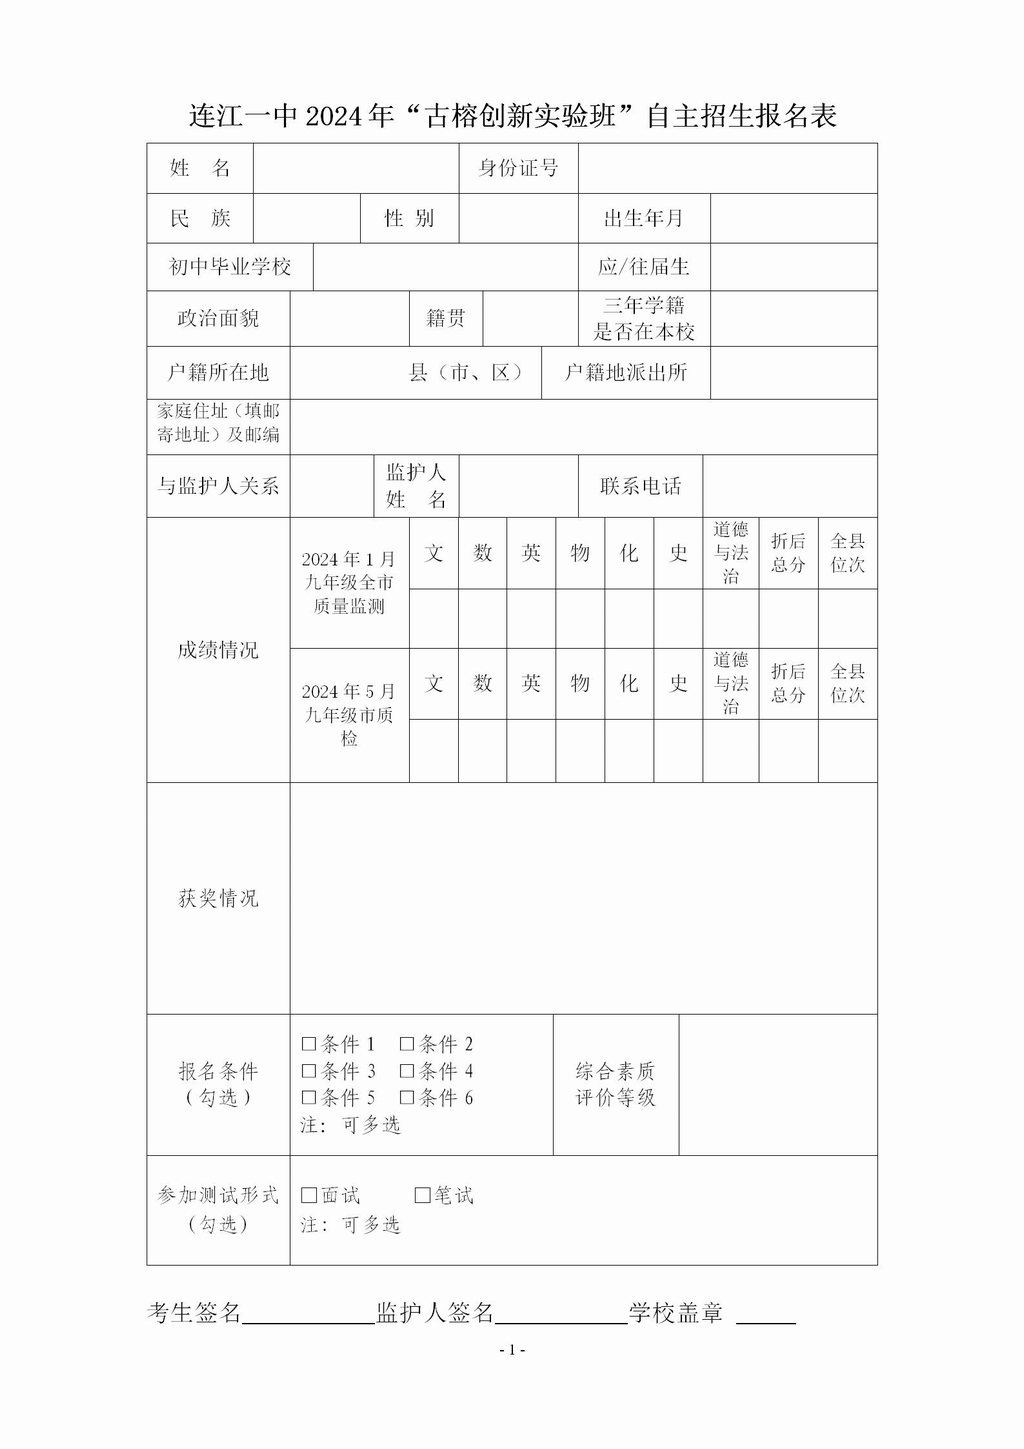 连江一中2024年“古榕创新实验班”自主招生报名表_01.jpg